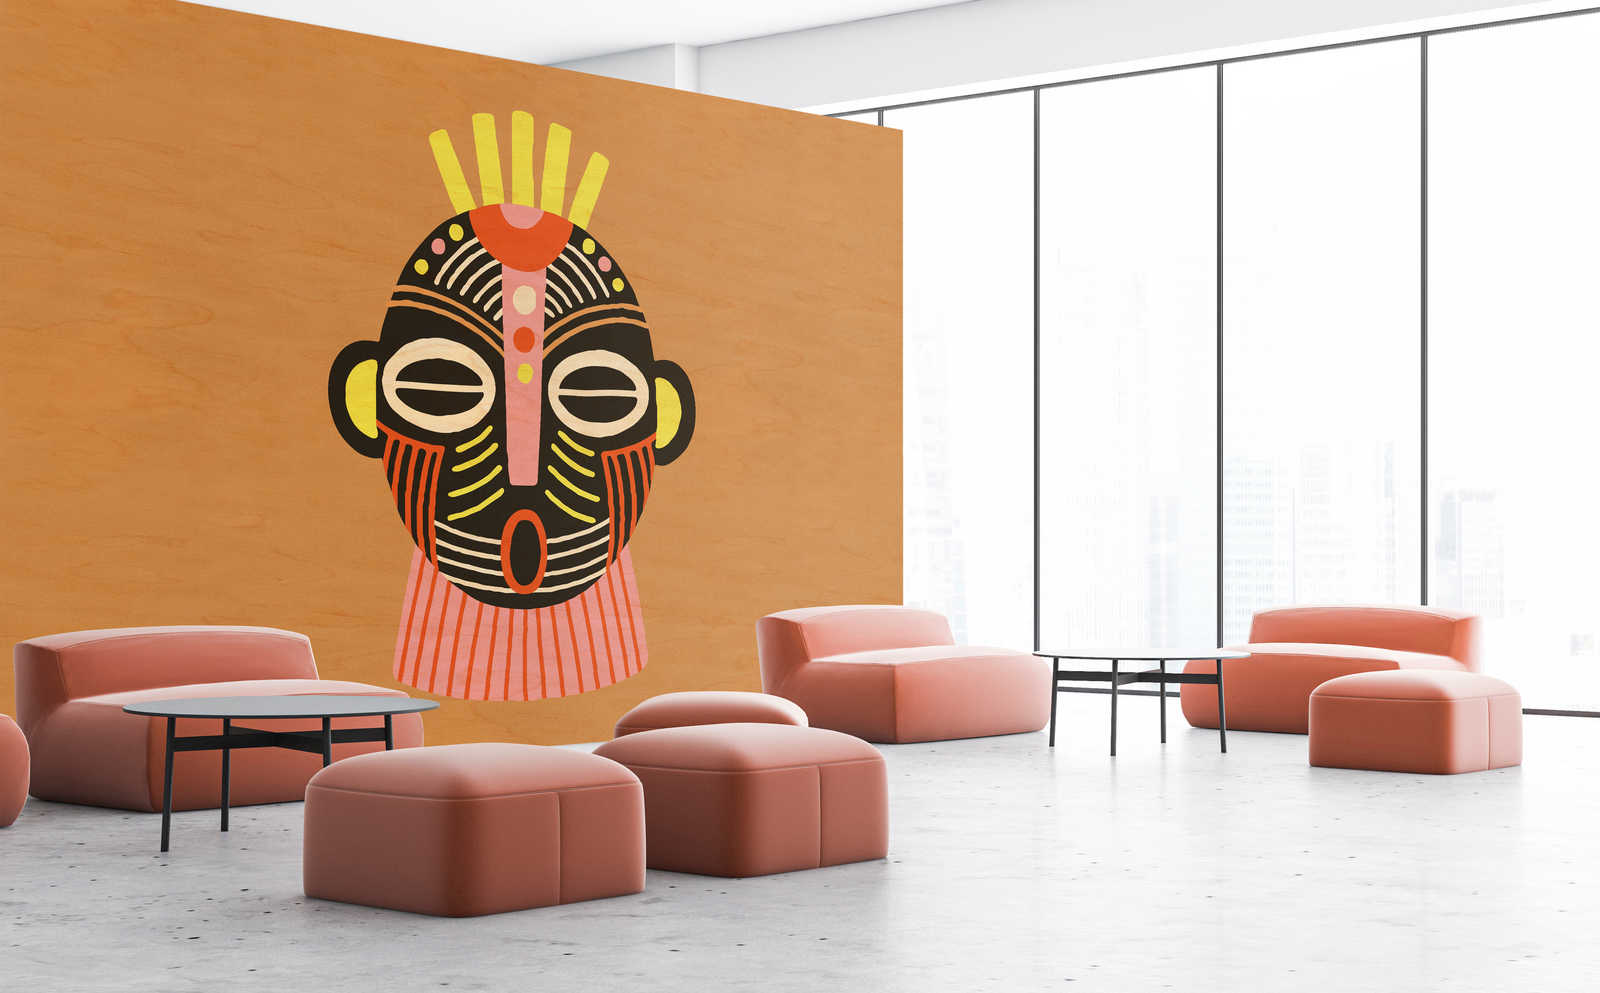             Overseas 4 - Muurschildering Afrika Ontwerp Inspiratie Masker
        